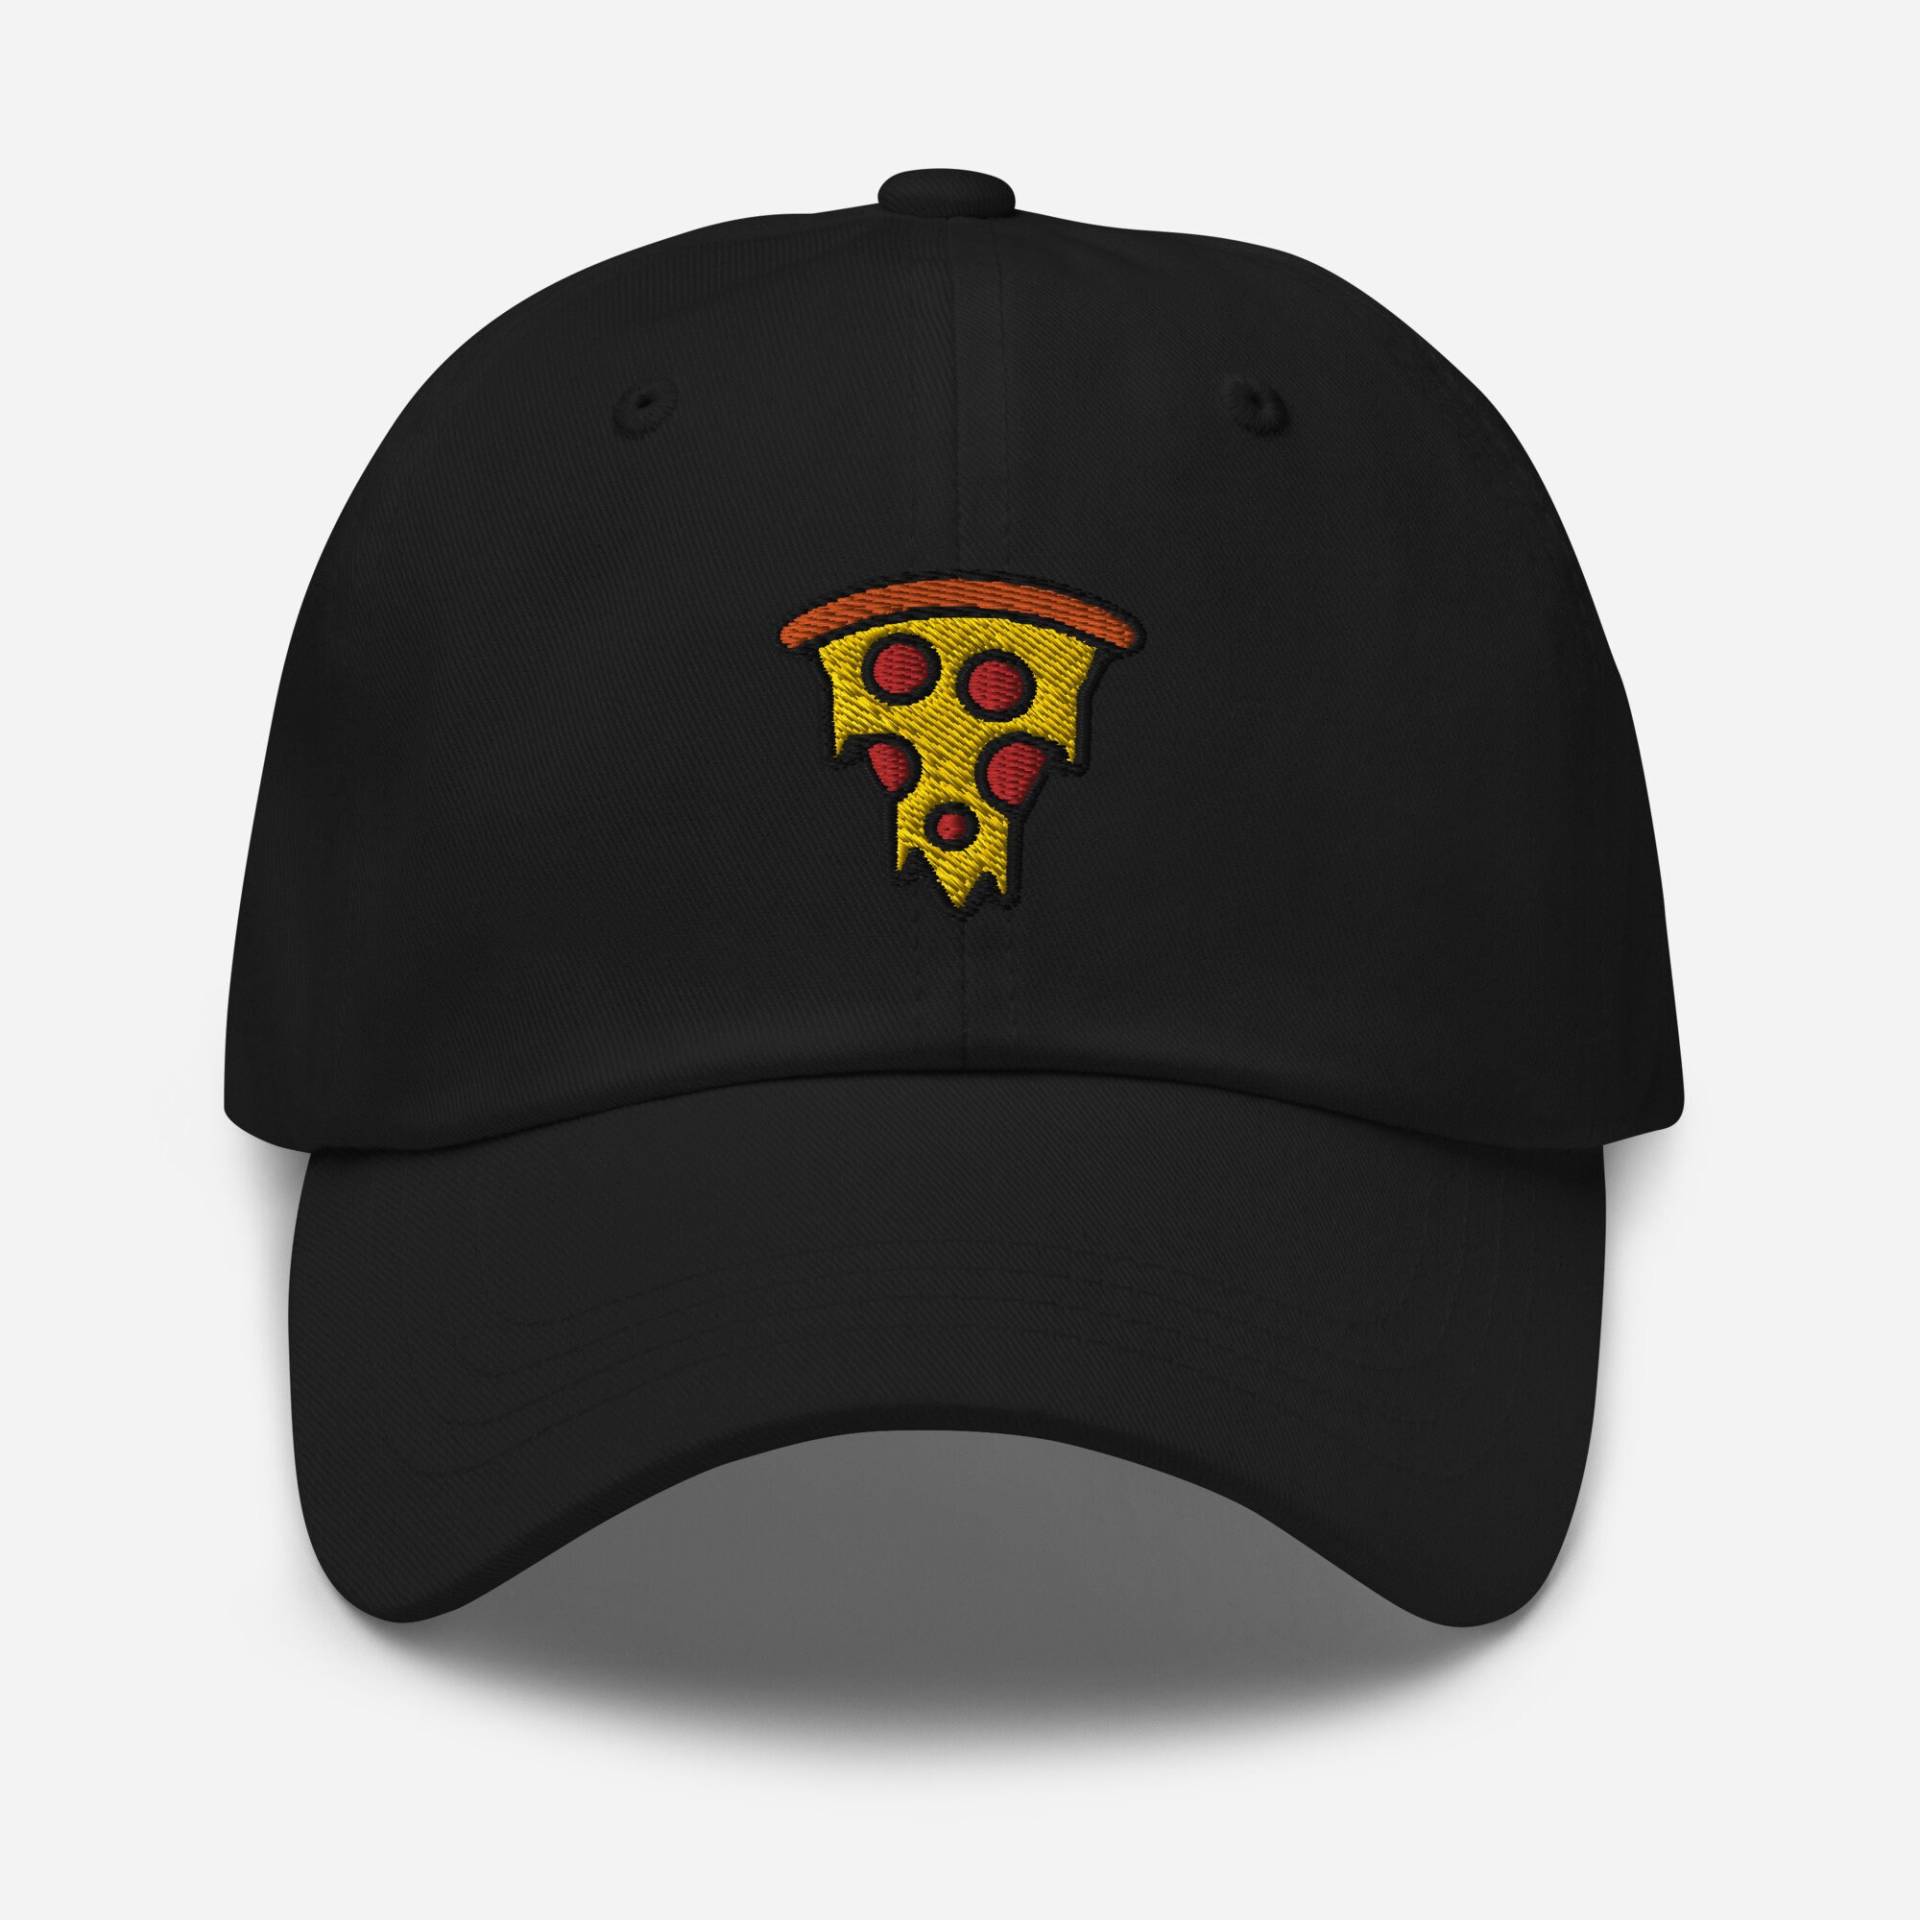 Peperoni Pizza Papa Hut, Bestickte Salami Scheibe Baseballmütze, Unisex Verstellbare Kappe in Mehreren Farben, Lustiges Geschenk Für Pizzaliebhaber von StitchinSmilesCo